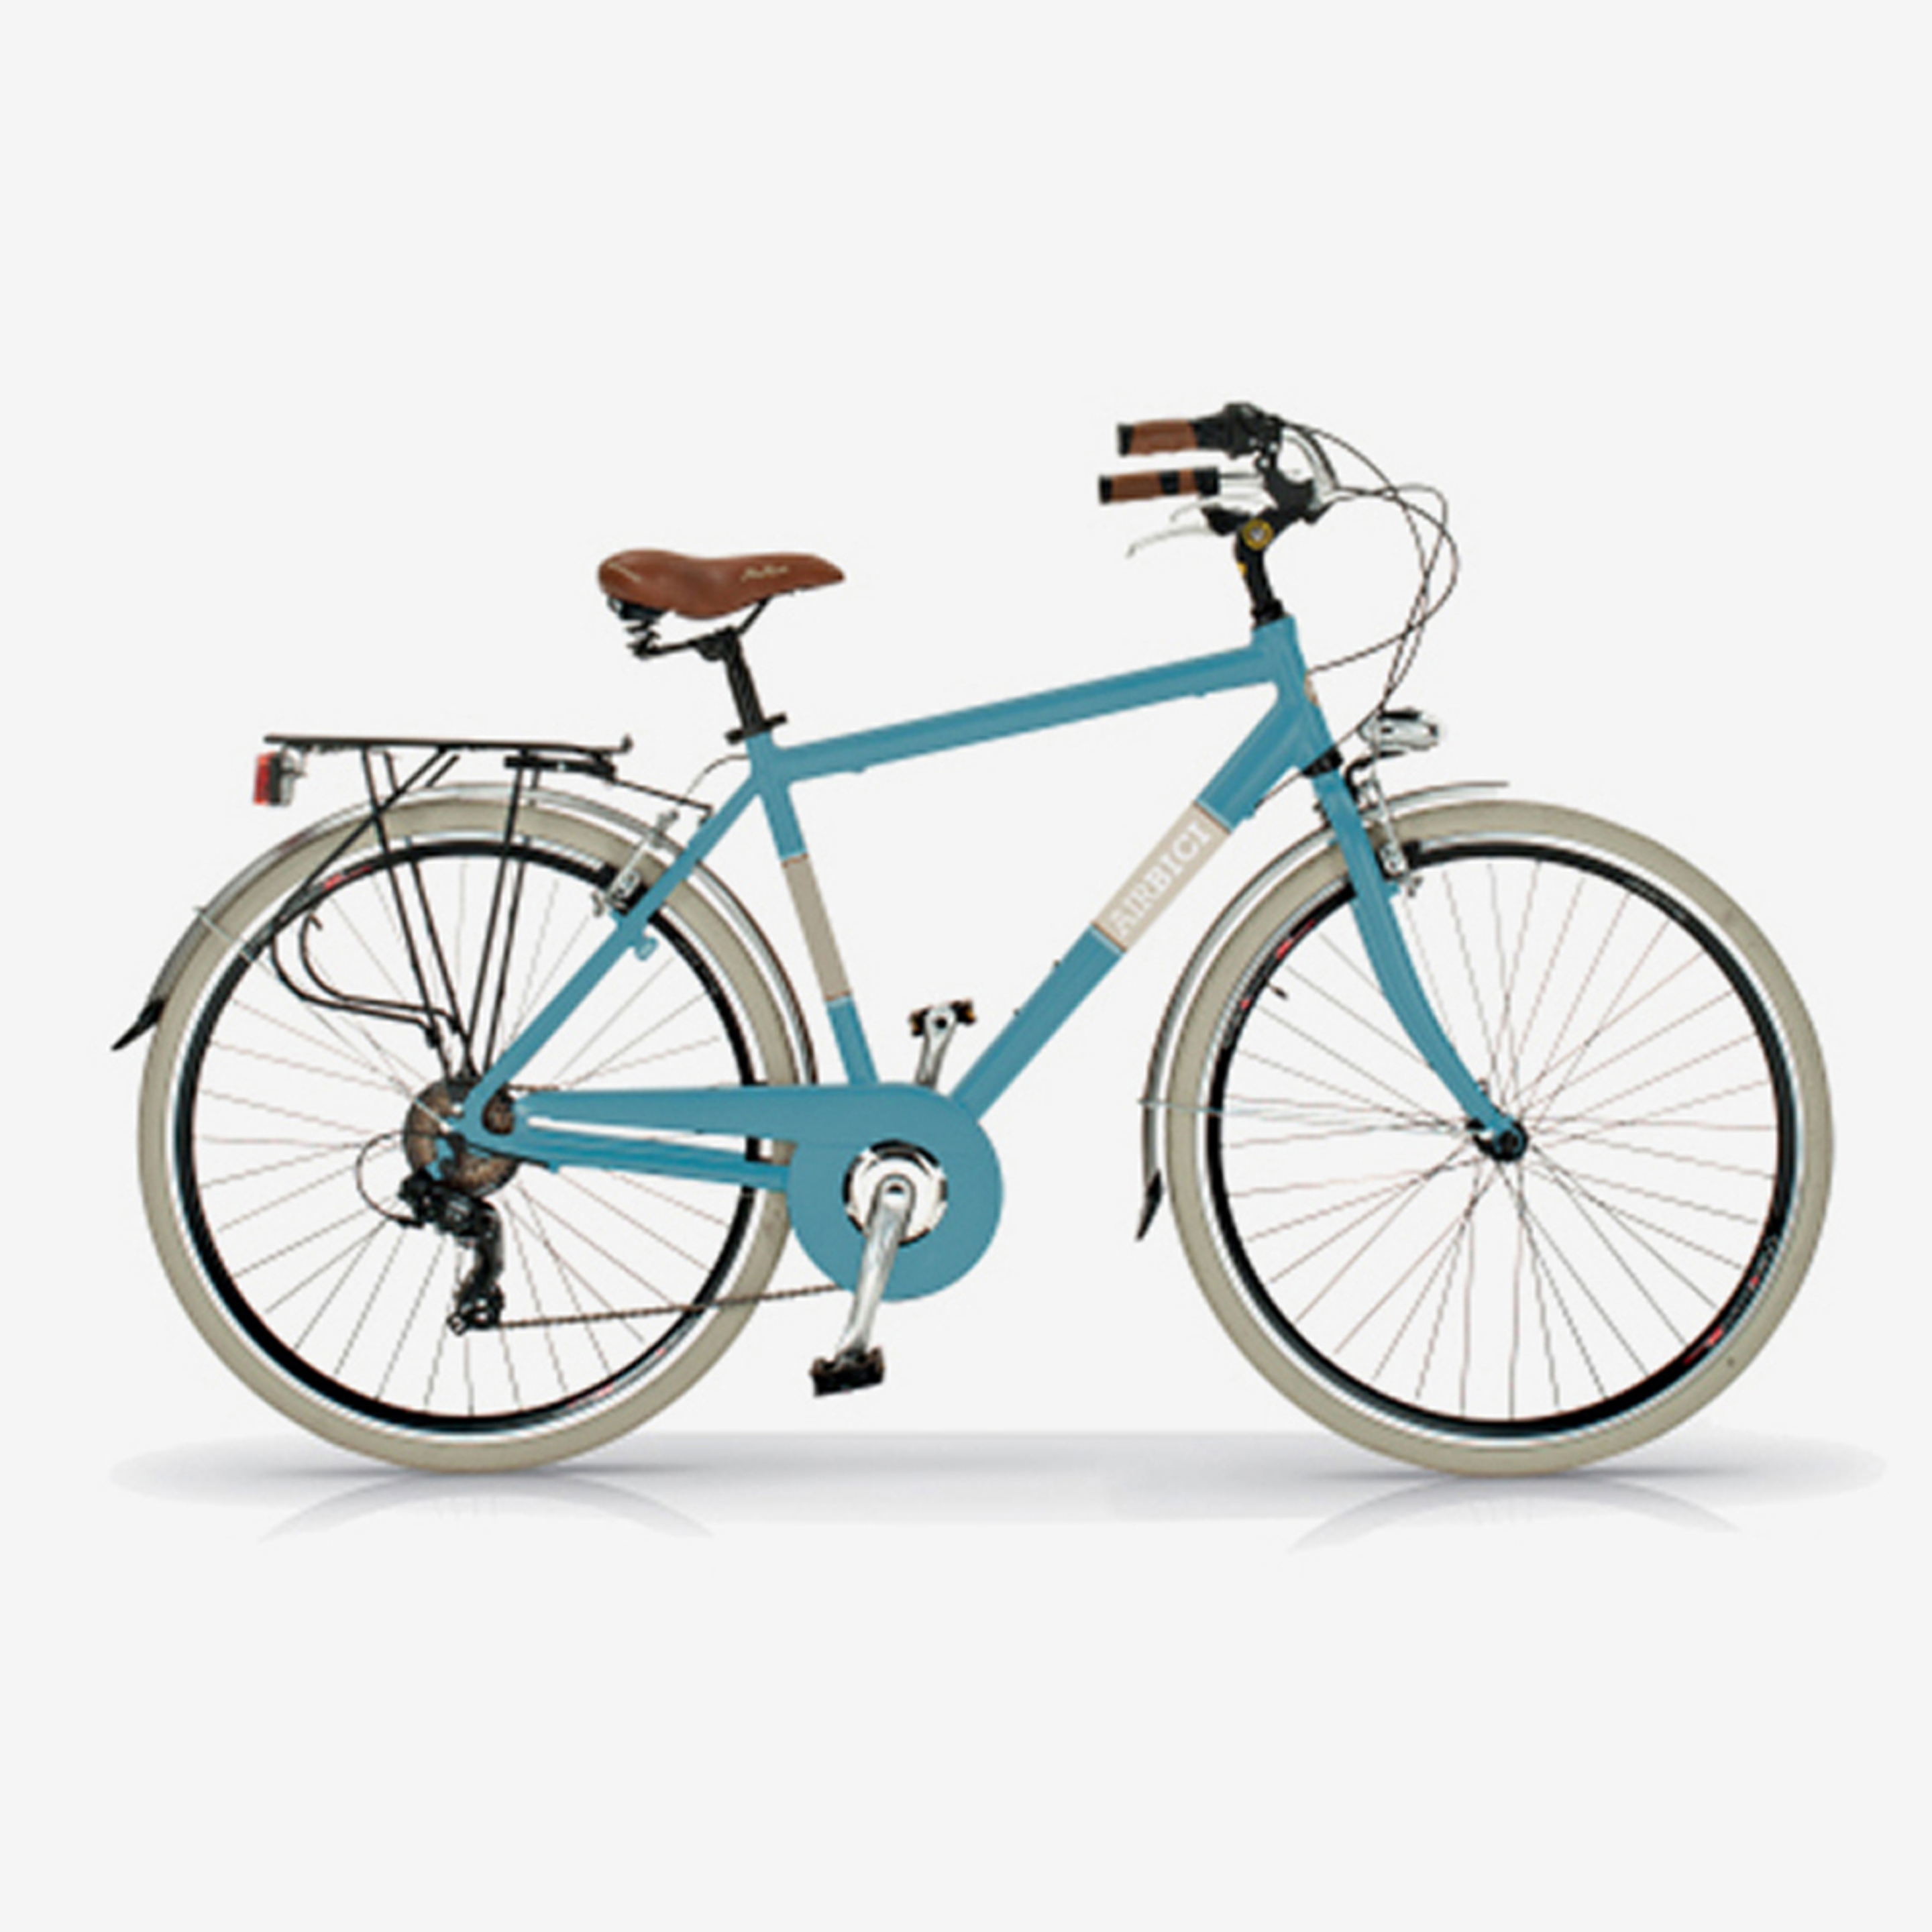 Bicicleta De Ciudad  Airbici 605am Elegance - Azul Cielo - Vintage, paseo, ciudad  MKP